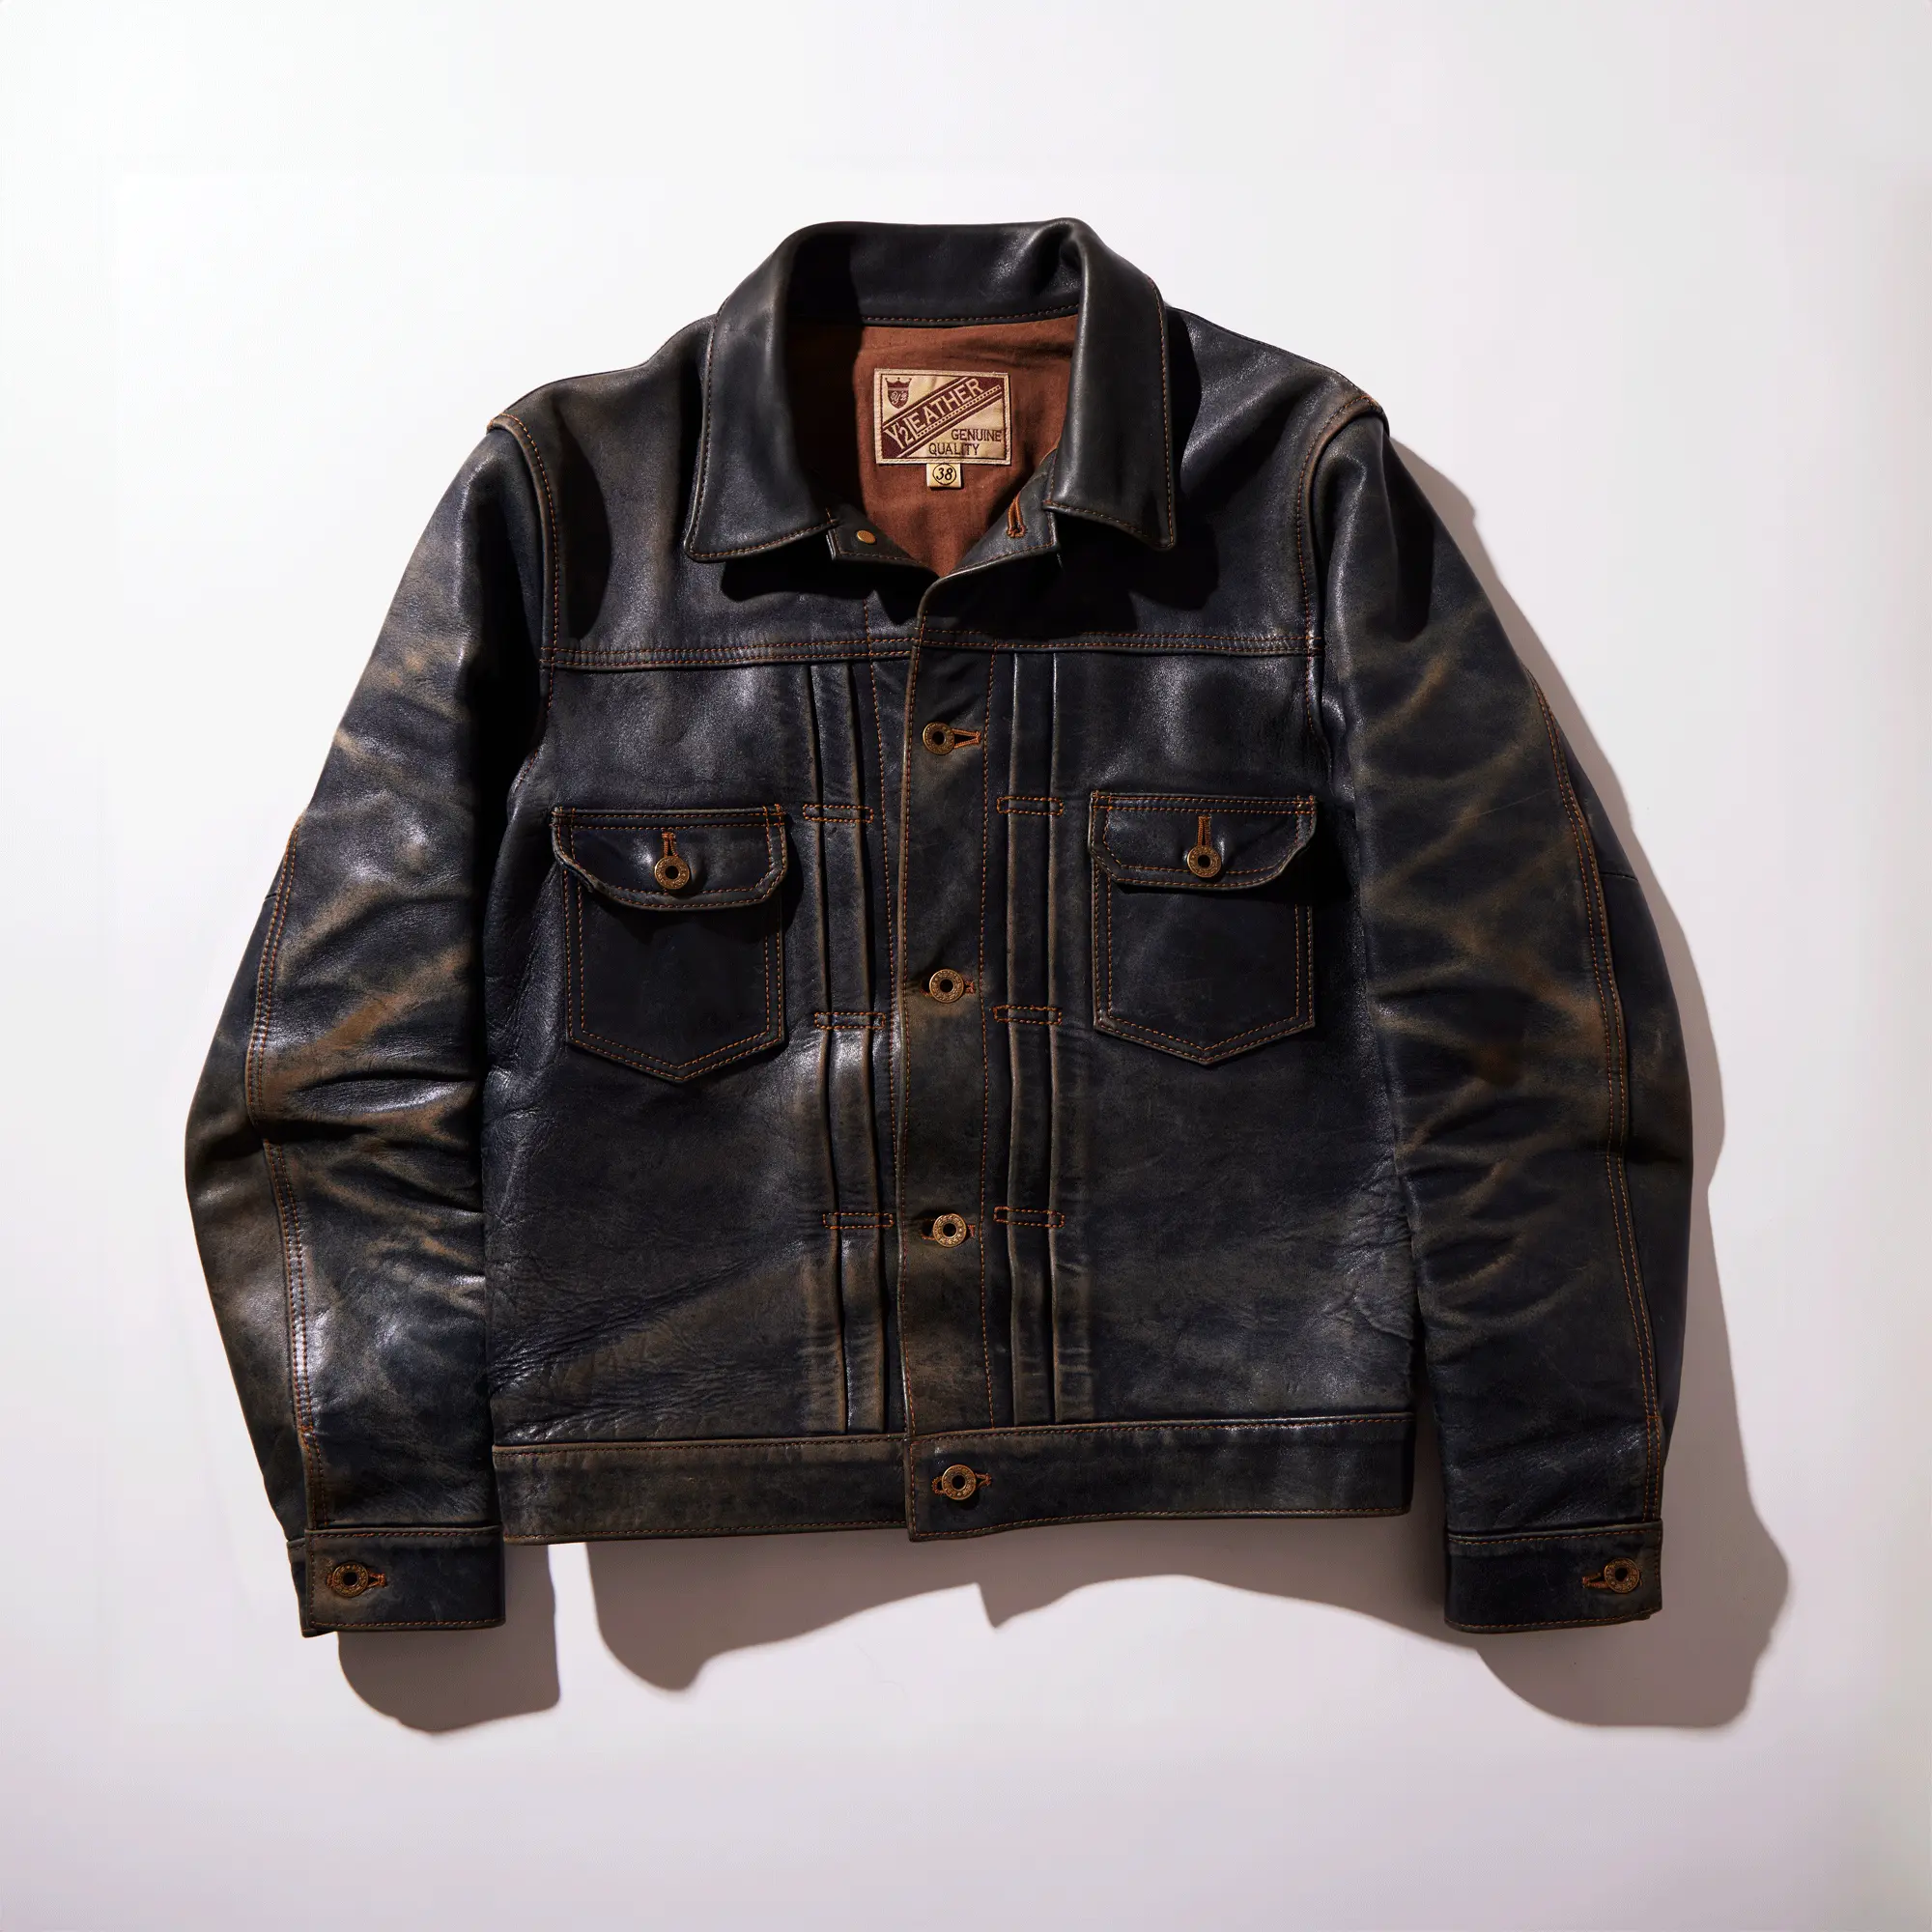 INDIGO HORSE 1st Type JACKET leather jacket brand